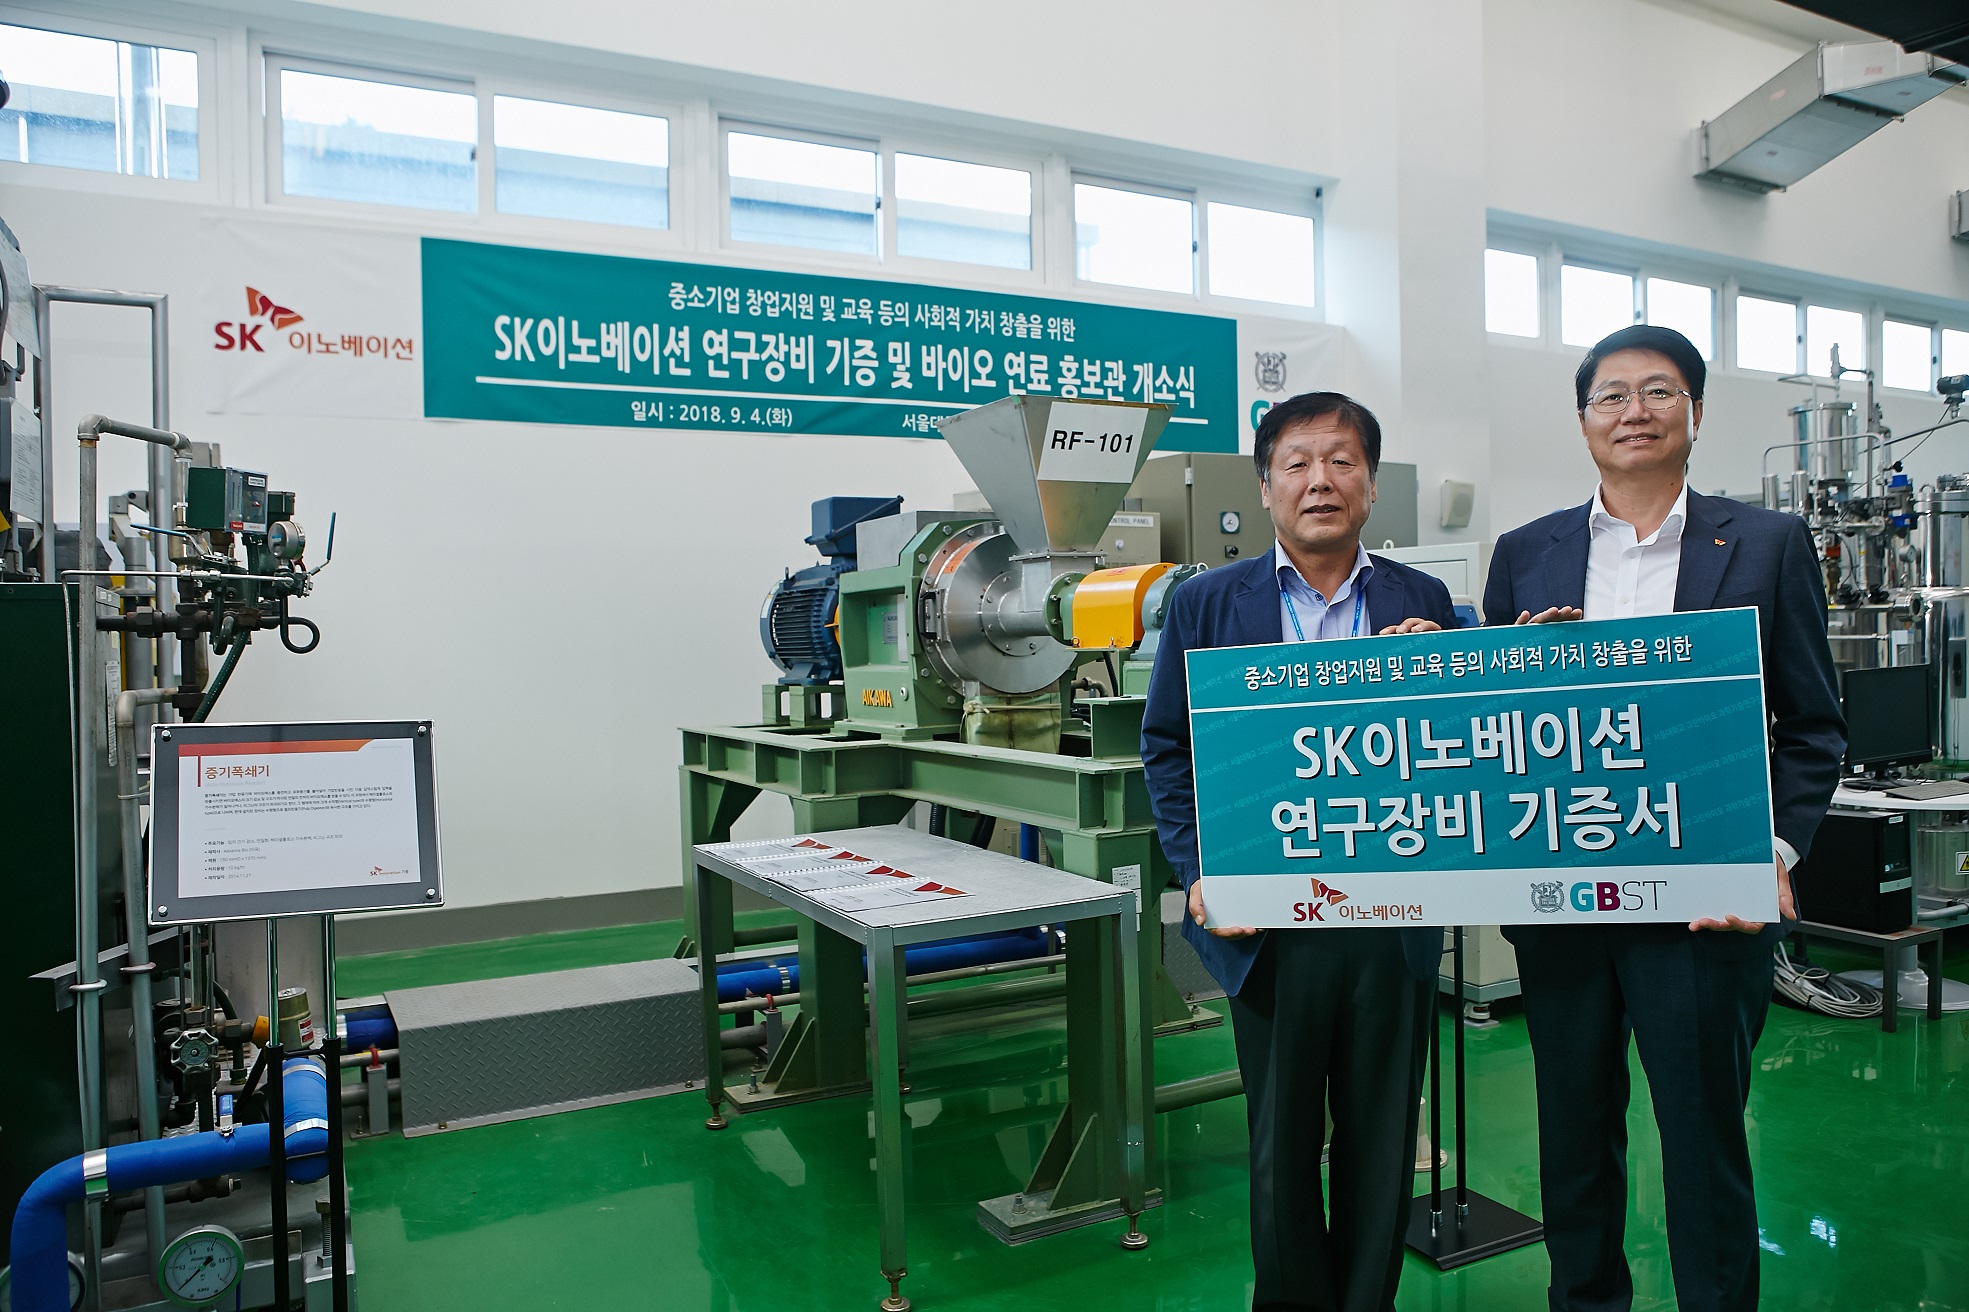 SK이노베이션, 서울대학교에 그린 에너지 연구장비 기증